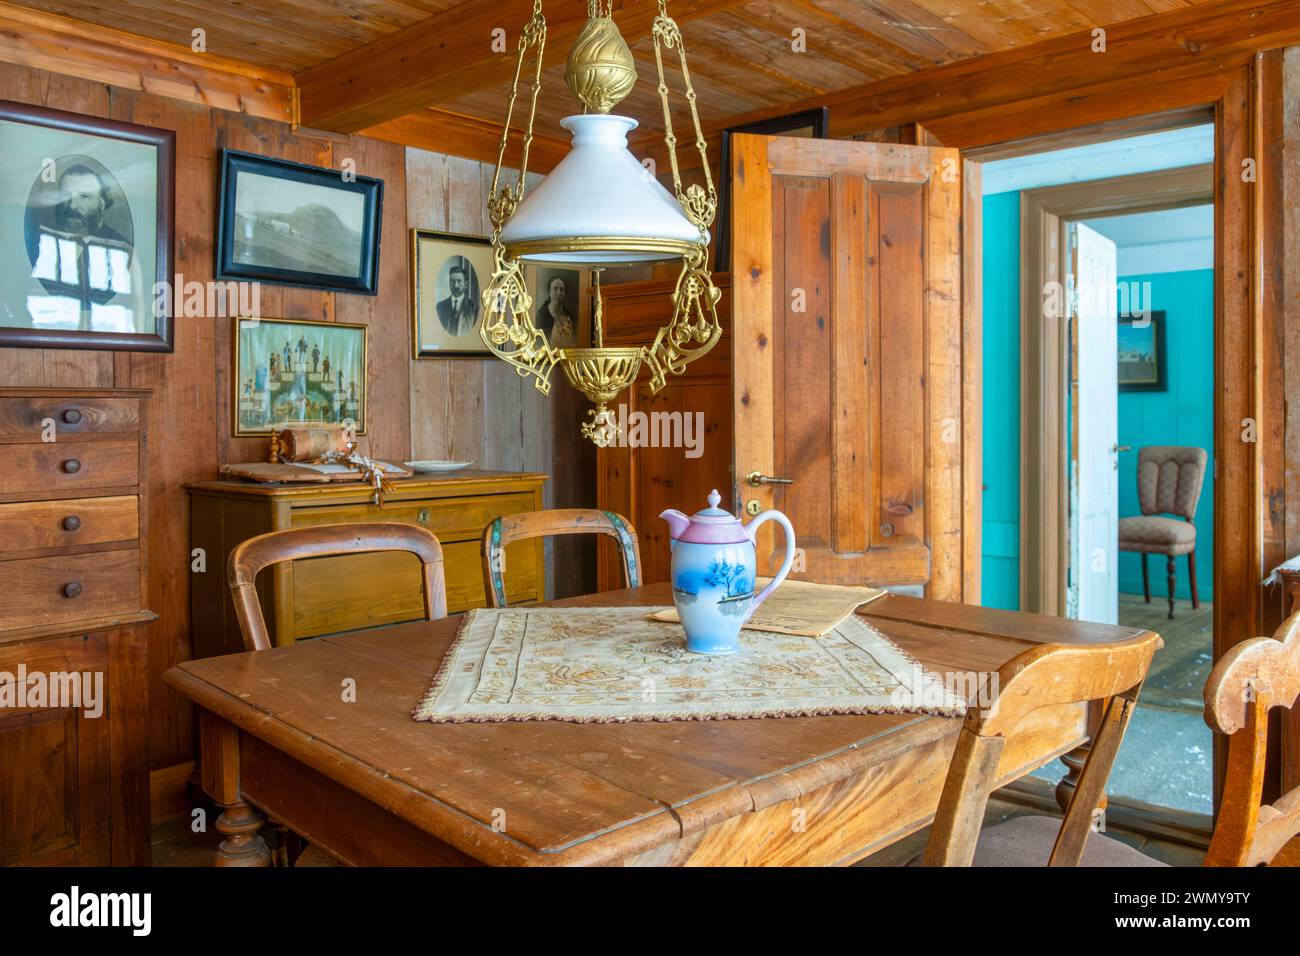 Island, Südküste, Region Sudurland, Skogar, Skogar Museum, Innenraum traditioneller Häuser aus dem frühen 19. Jahrhundert Stockfoto